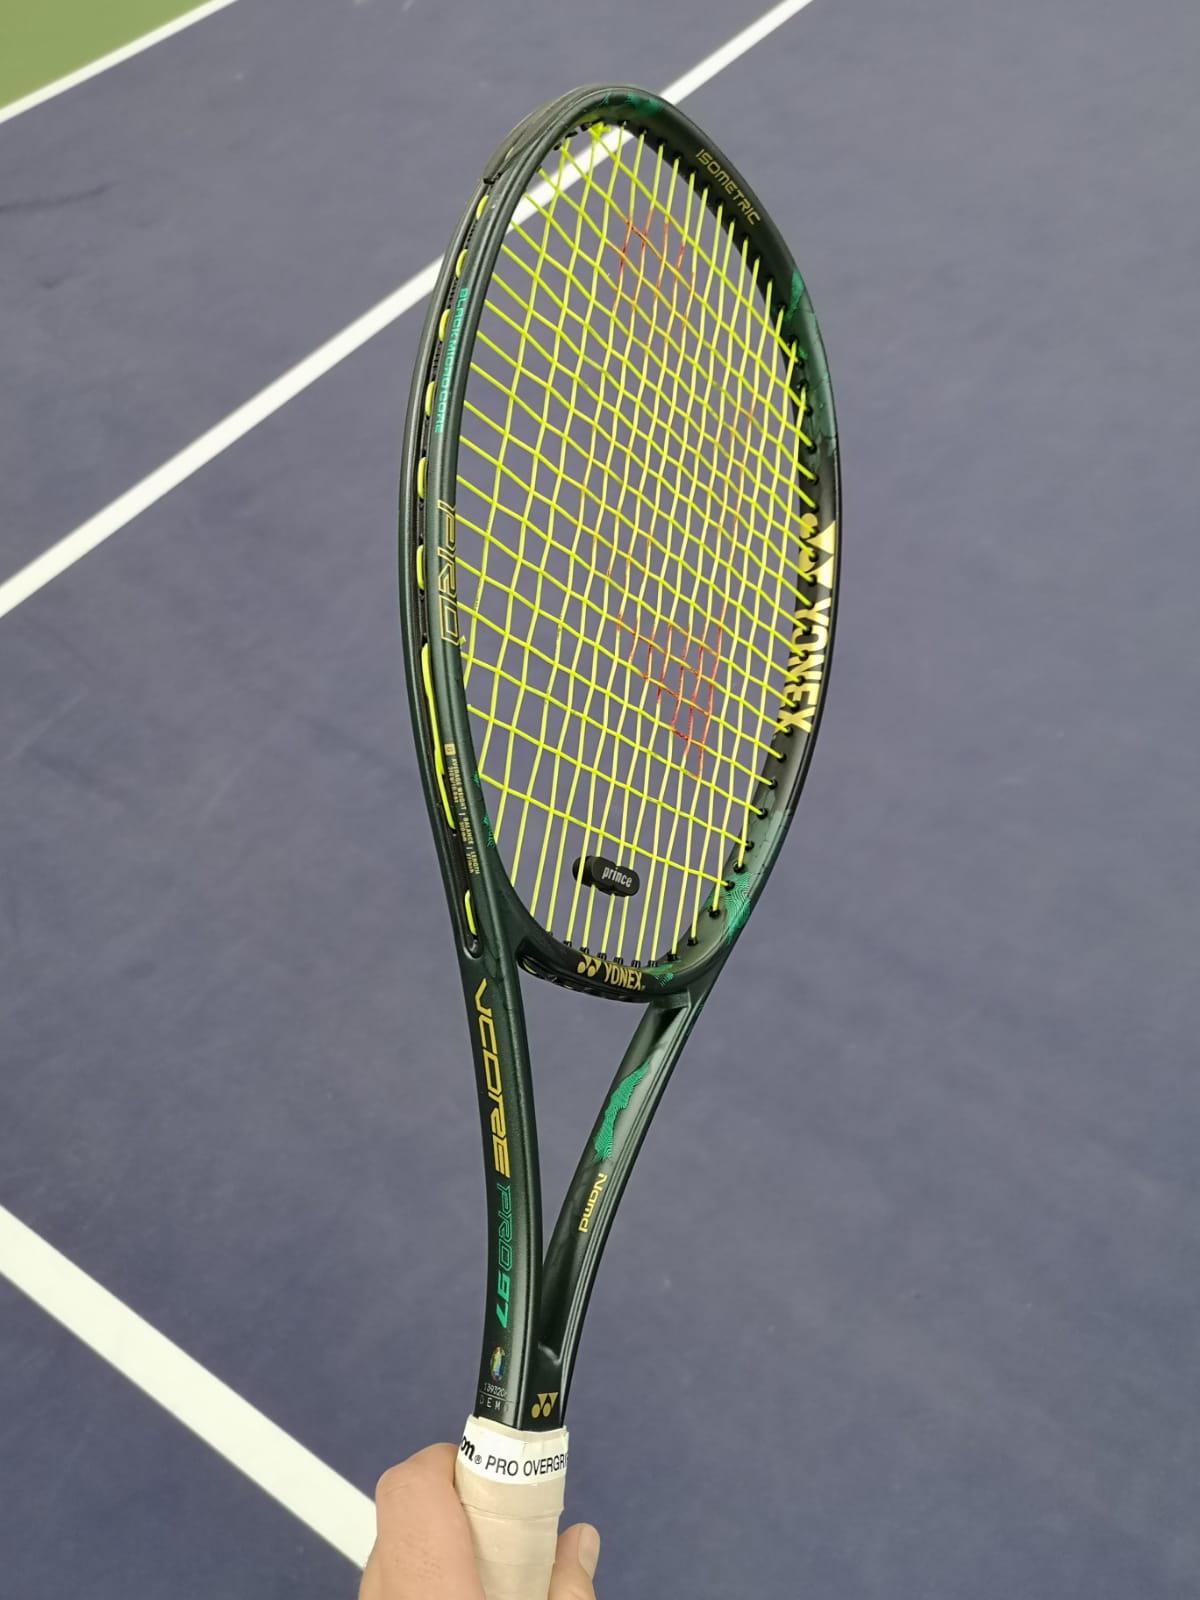 Yonex Vcore Pro 97 Racquet Review - Tennisnerd.net